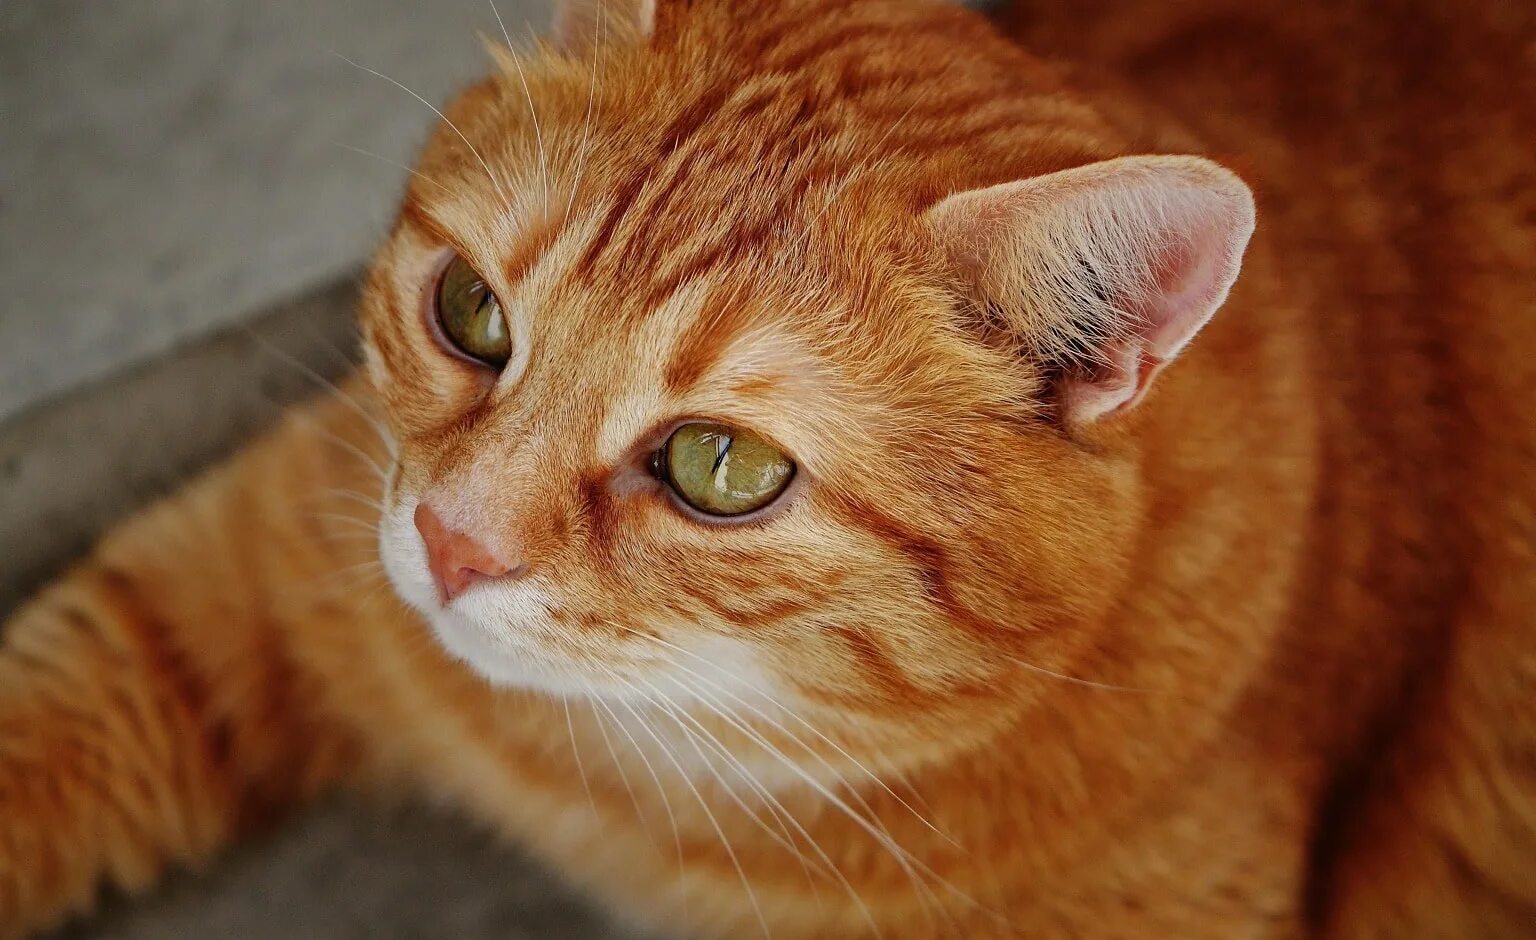 Сколько котят у рыжей кошки. Европейская короткошерстная кошка рыжая. Европейская короткошерстная табби рыжий. Европейский короткошерстный кот рыжий. Макрелевый табби рыжий.